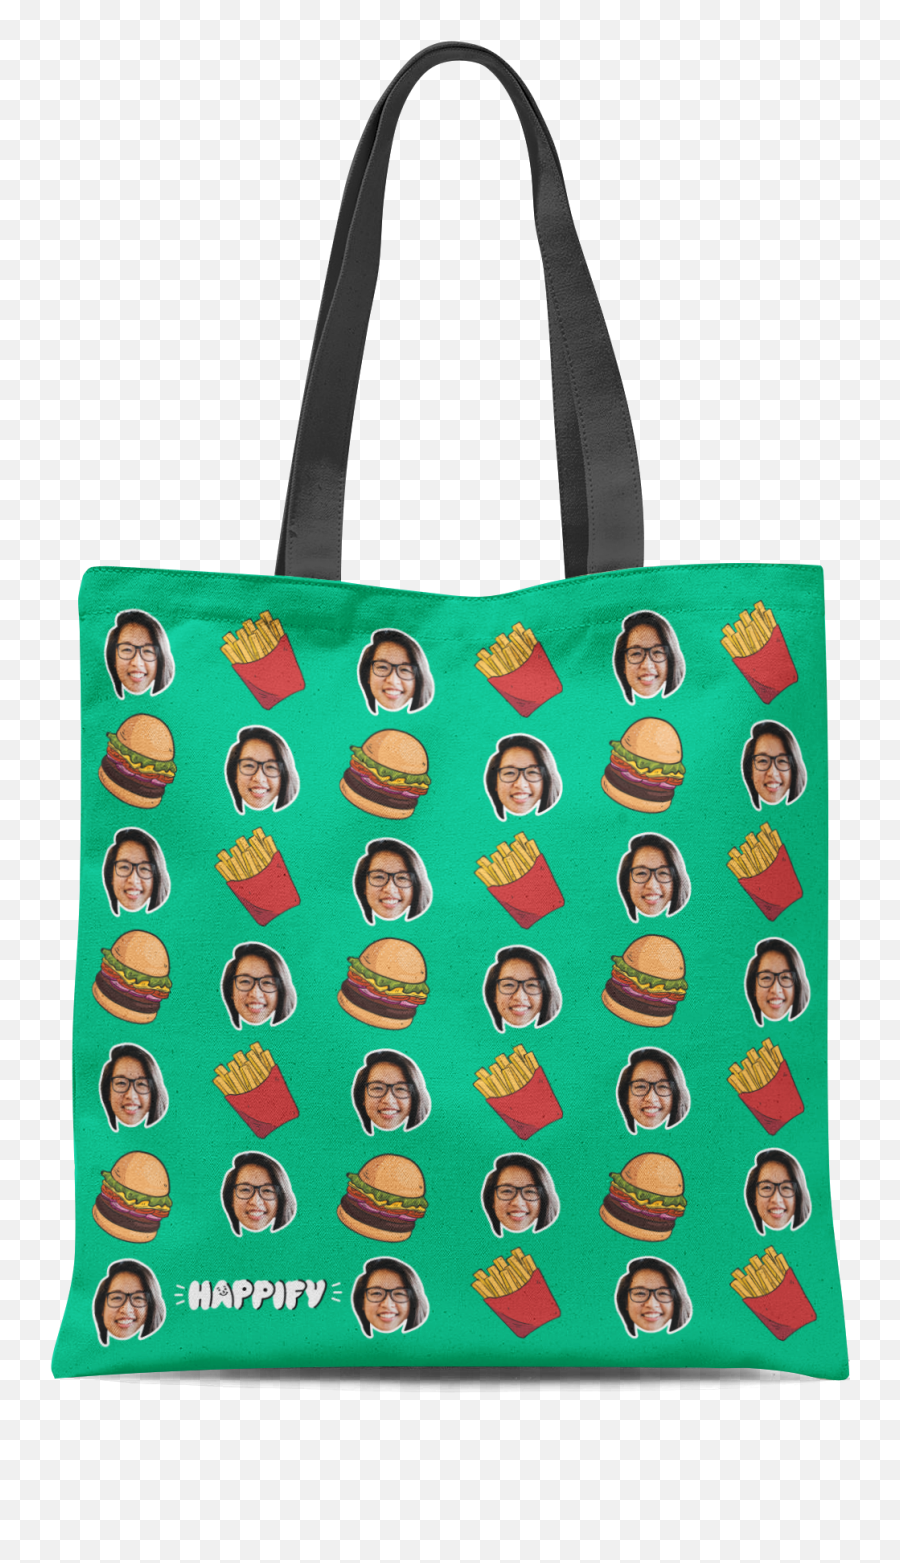 Fresh Fries U0026 Burger Custom Face Bag U2013 Happify Socks - Tote Bag Emoji,Candy Corn Emoticon